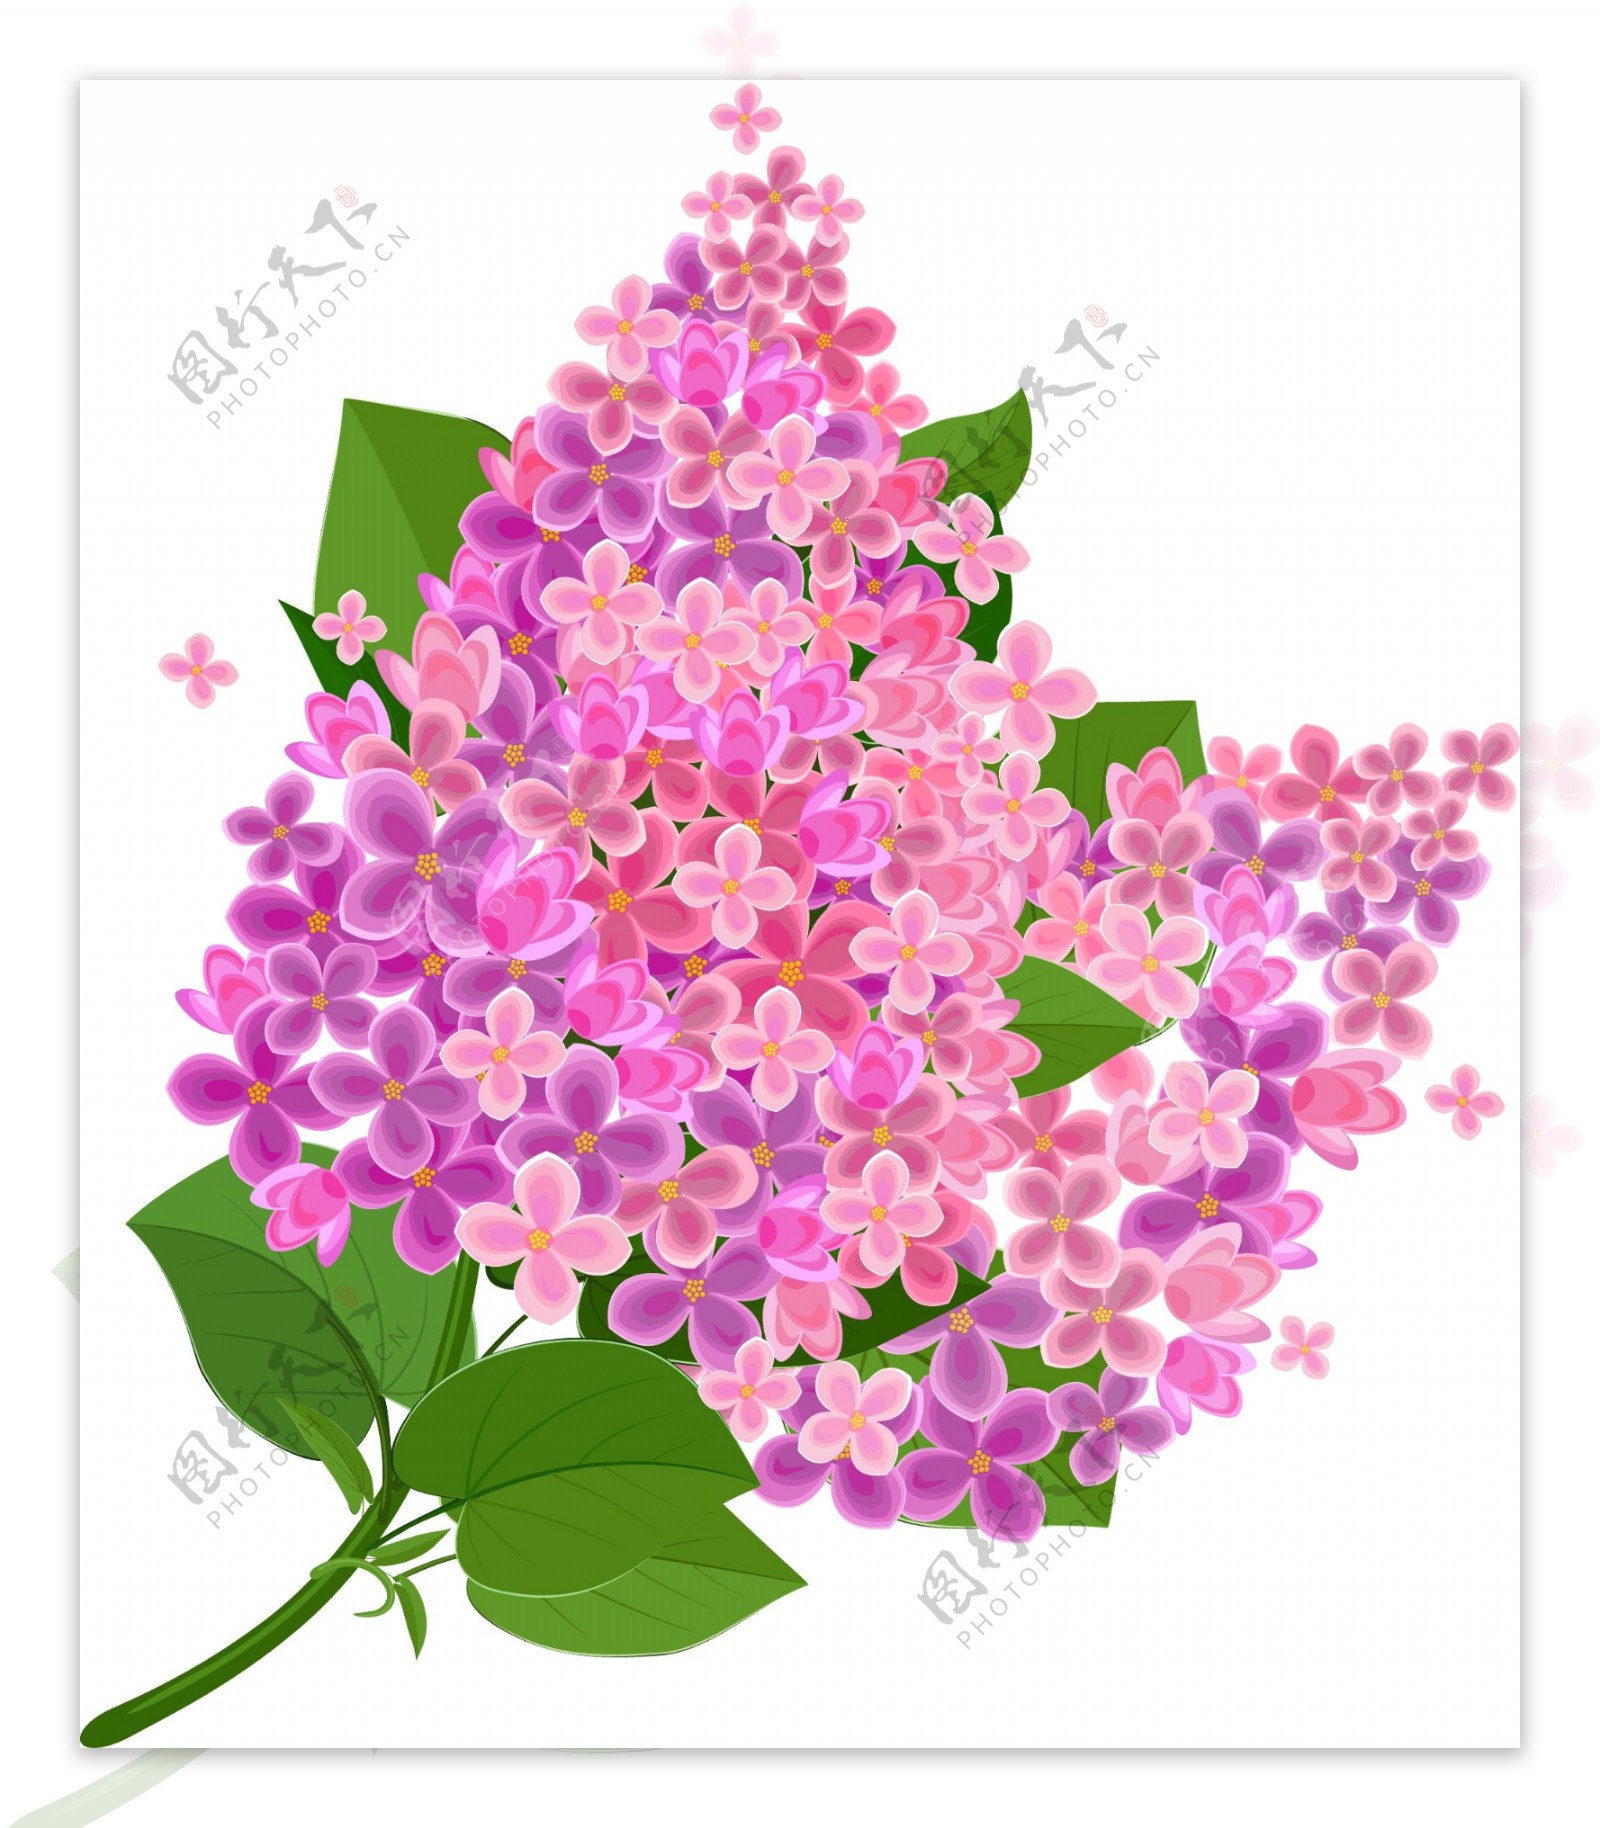 紫色的丁香花植物素材